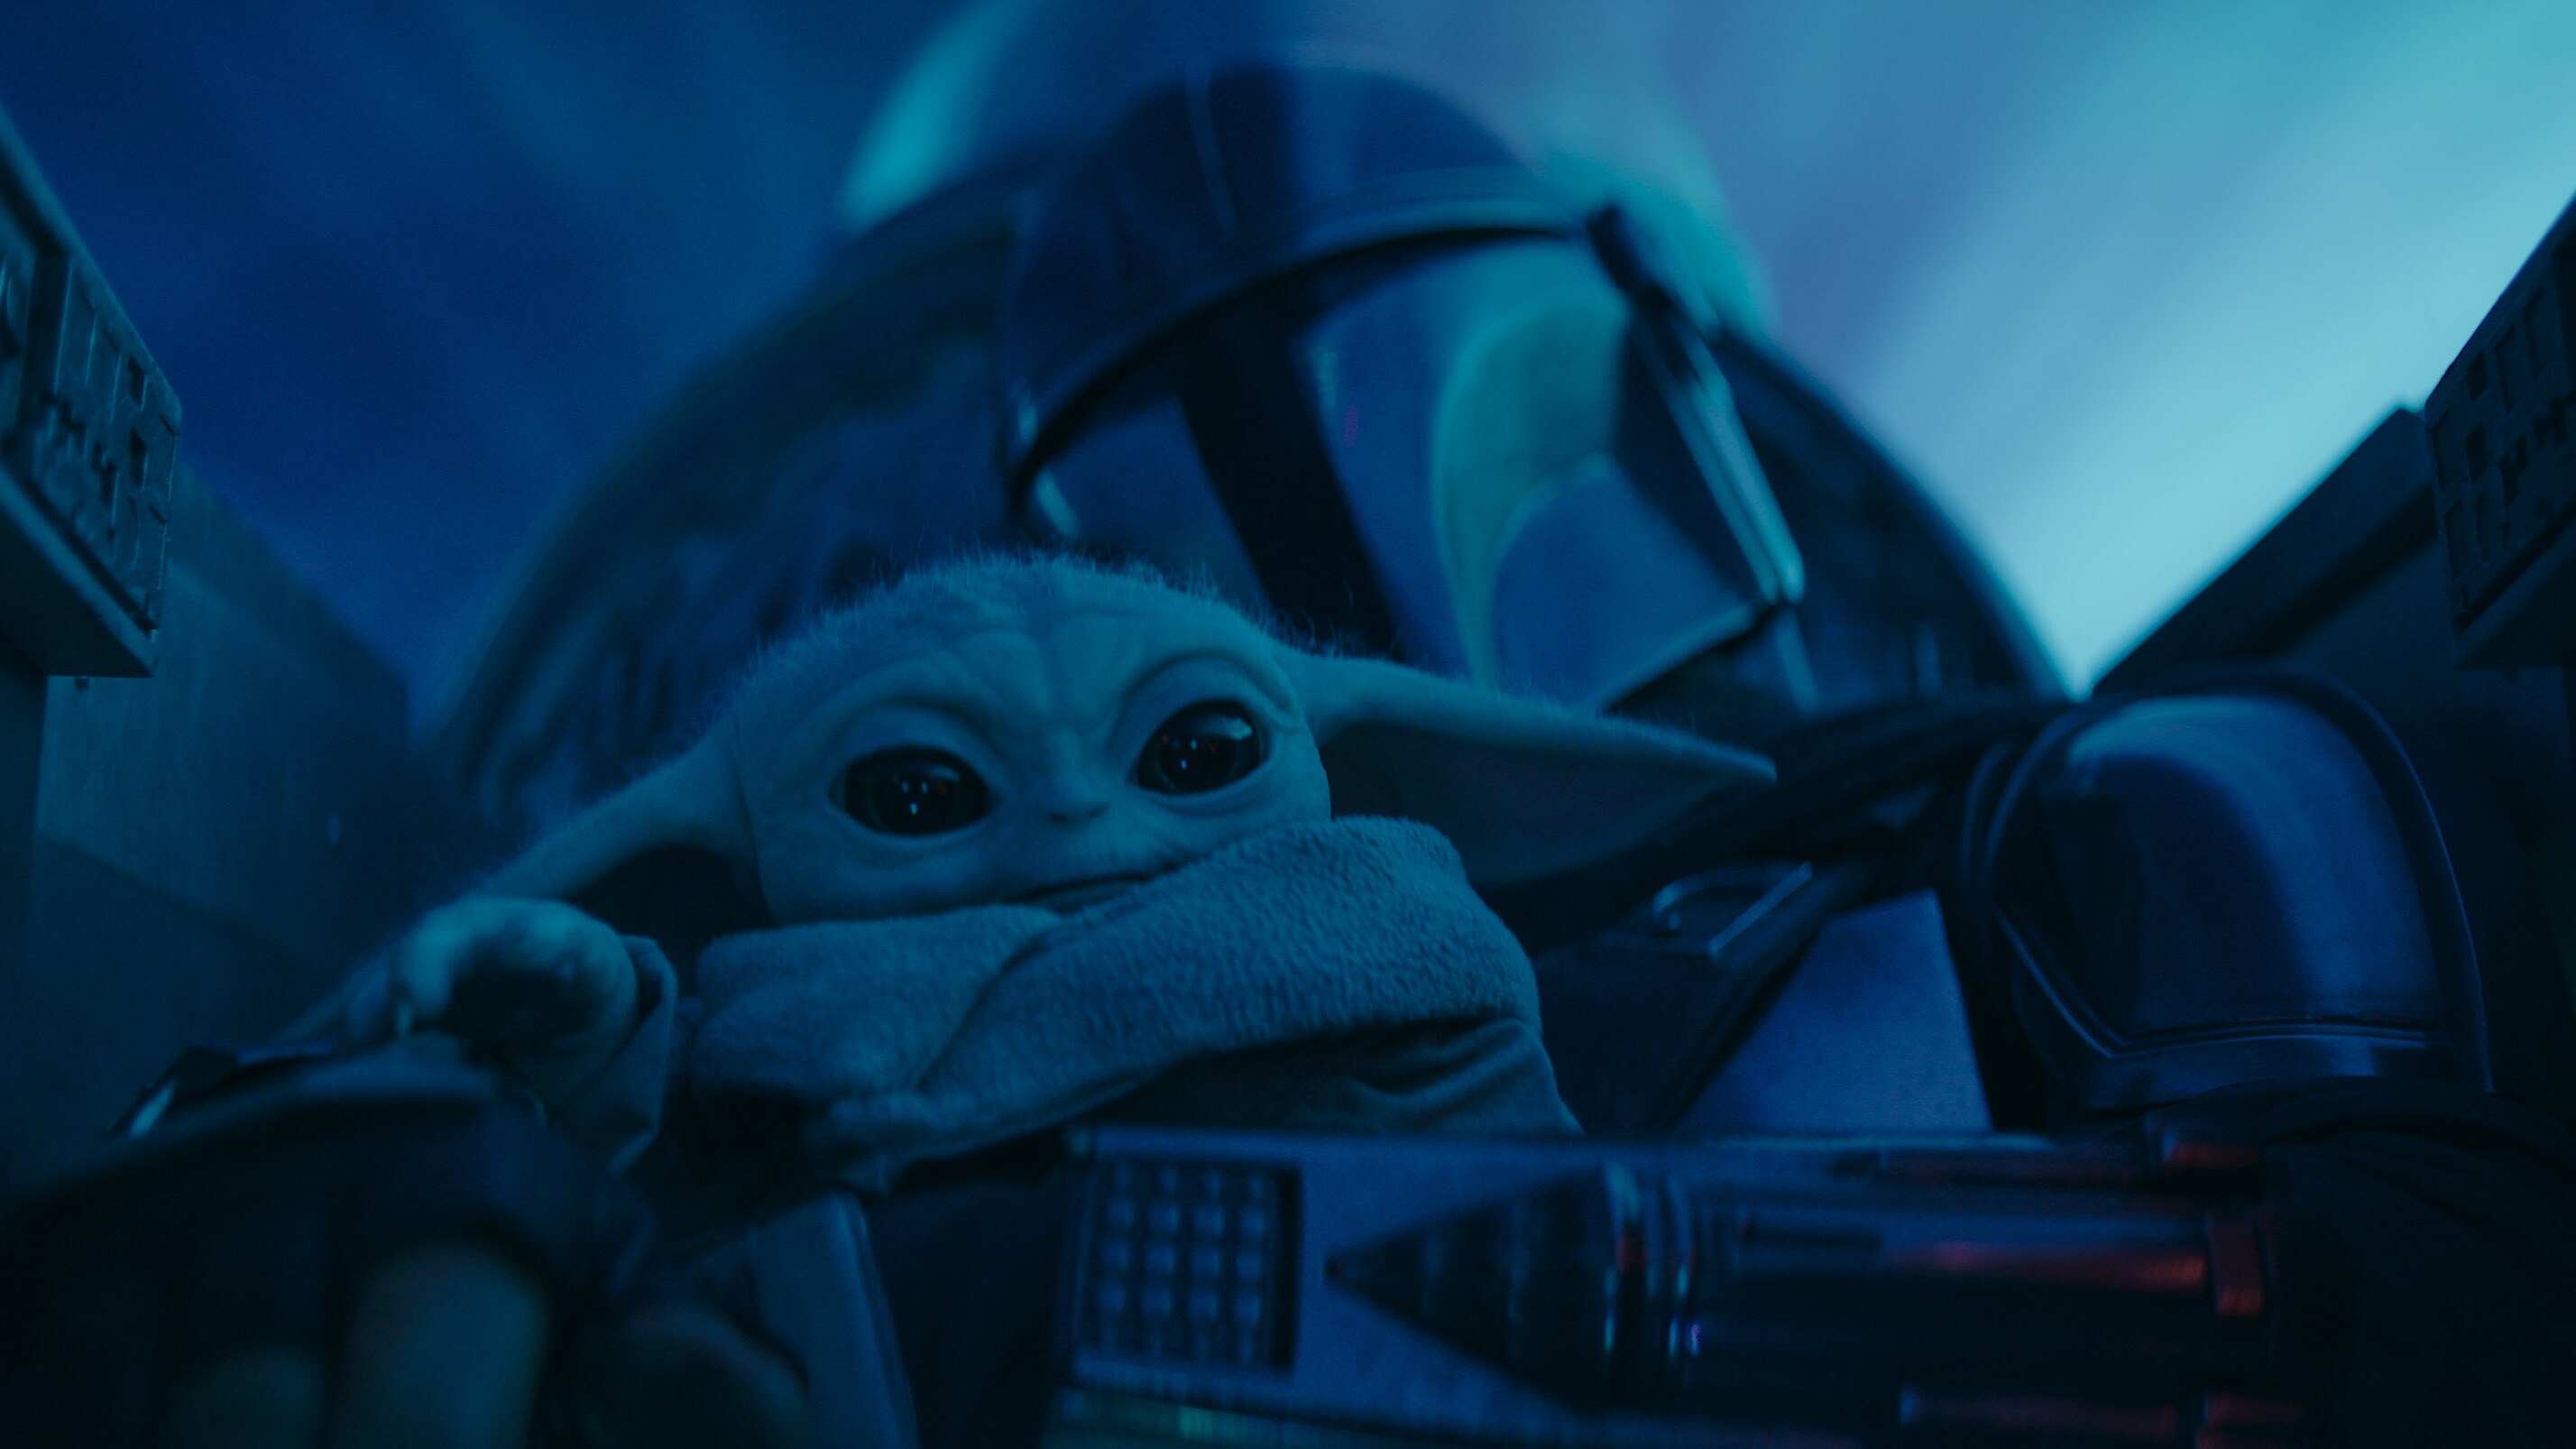 Disney+ Debuts Trailer & Key Art For Upcoming Season 3 Of “Star Wars: The Mandalorian”